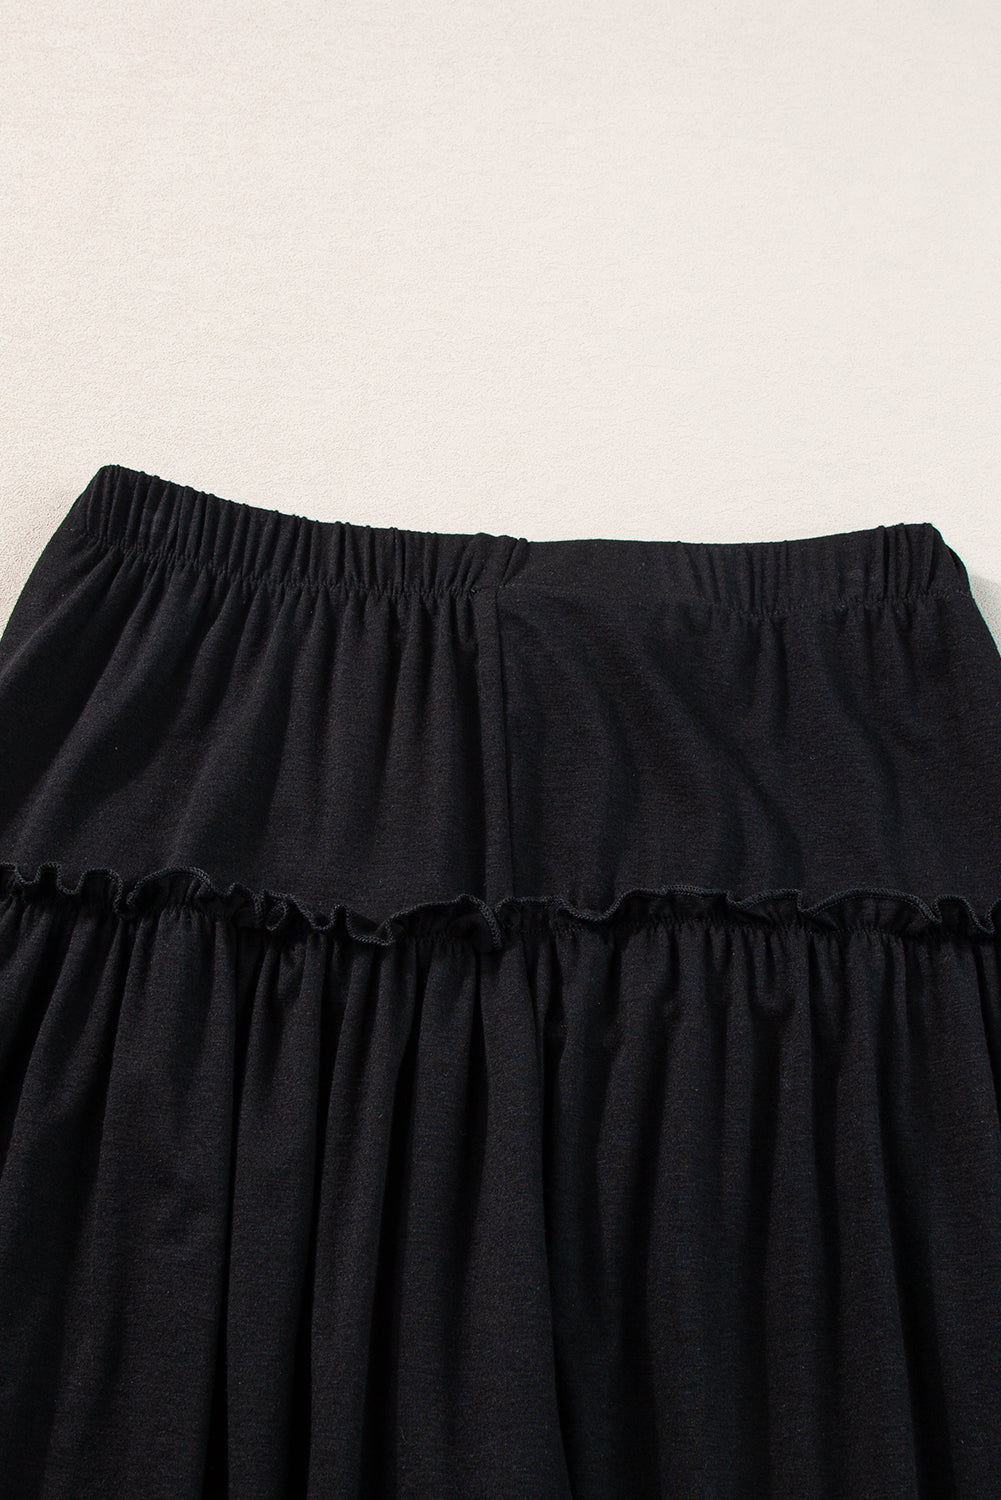 Pantalones anchos de cintura alta con cordón y volantes negros